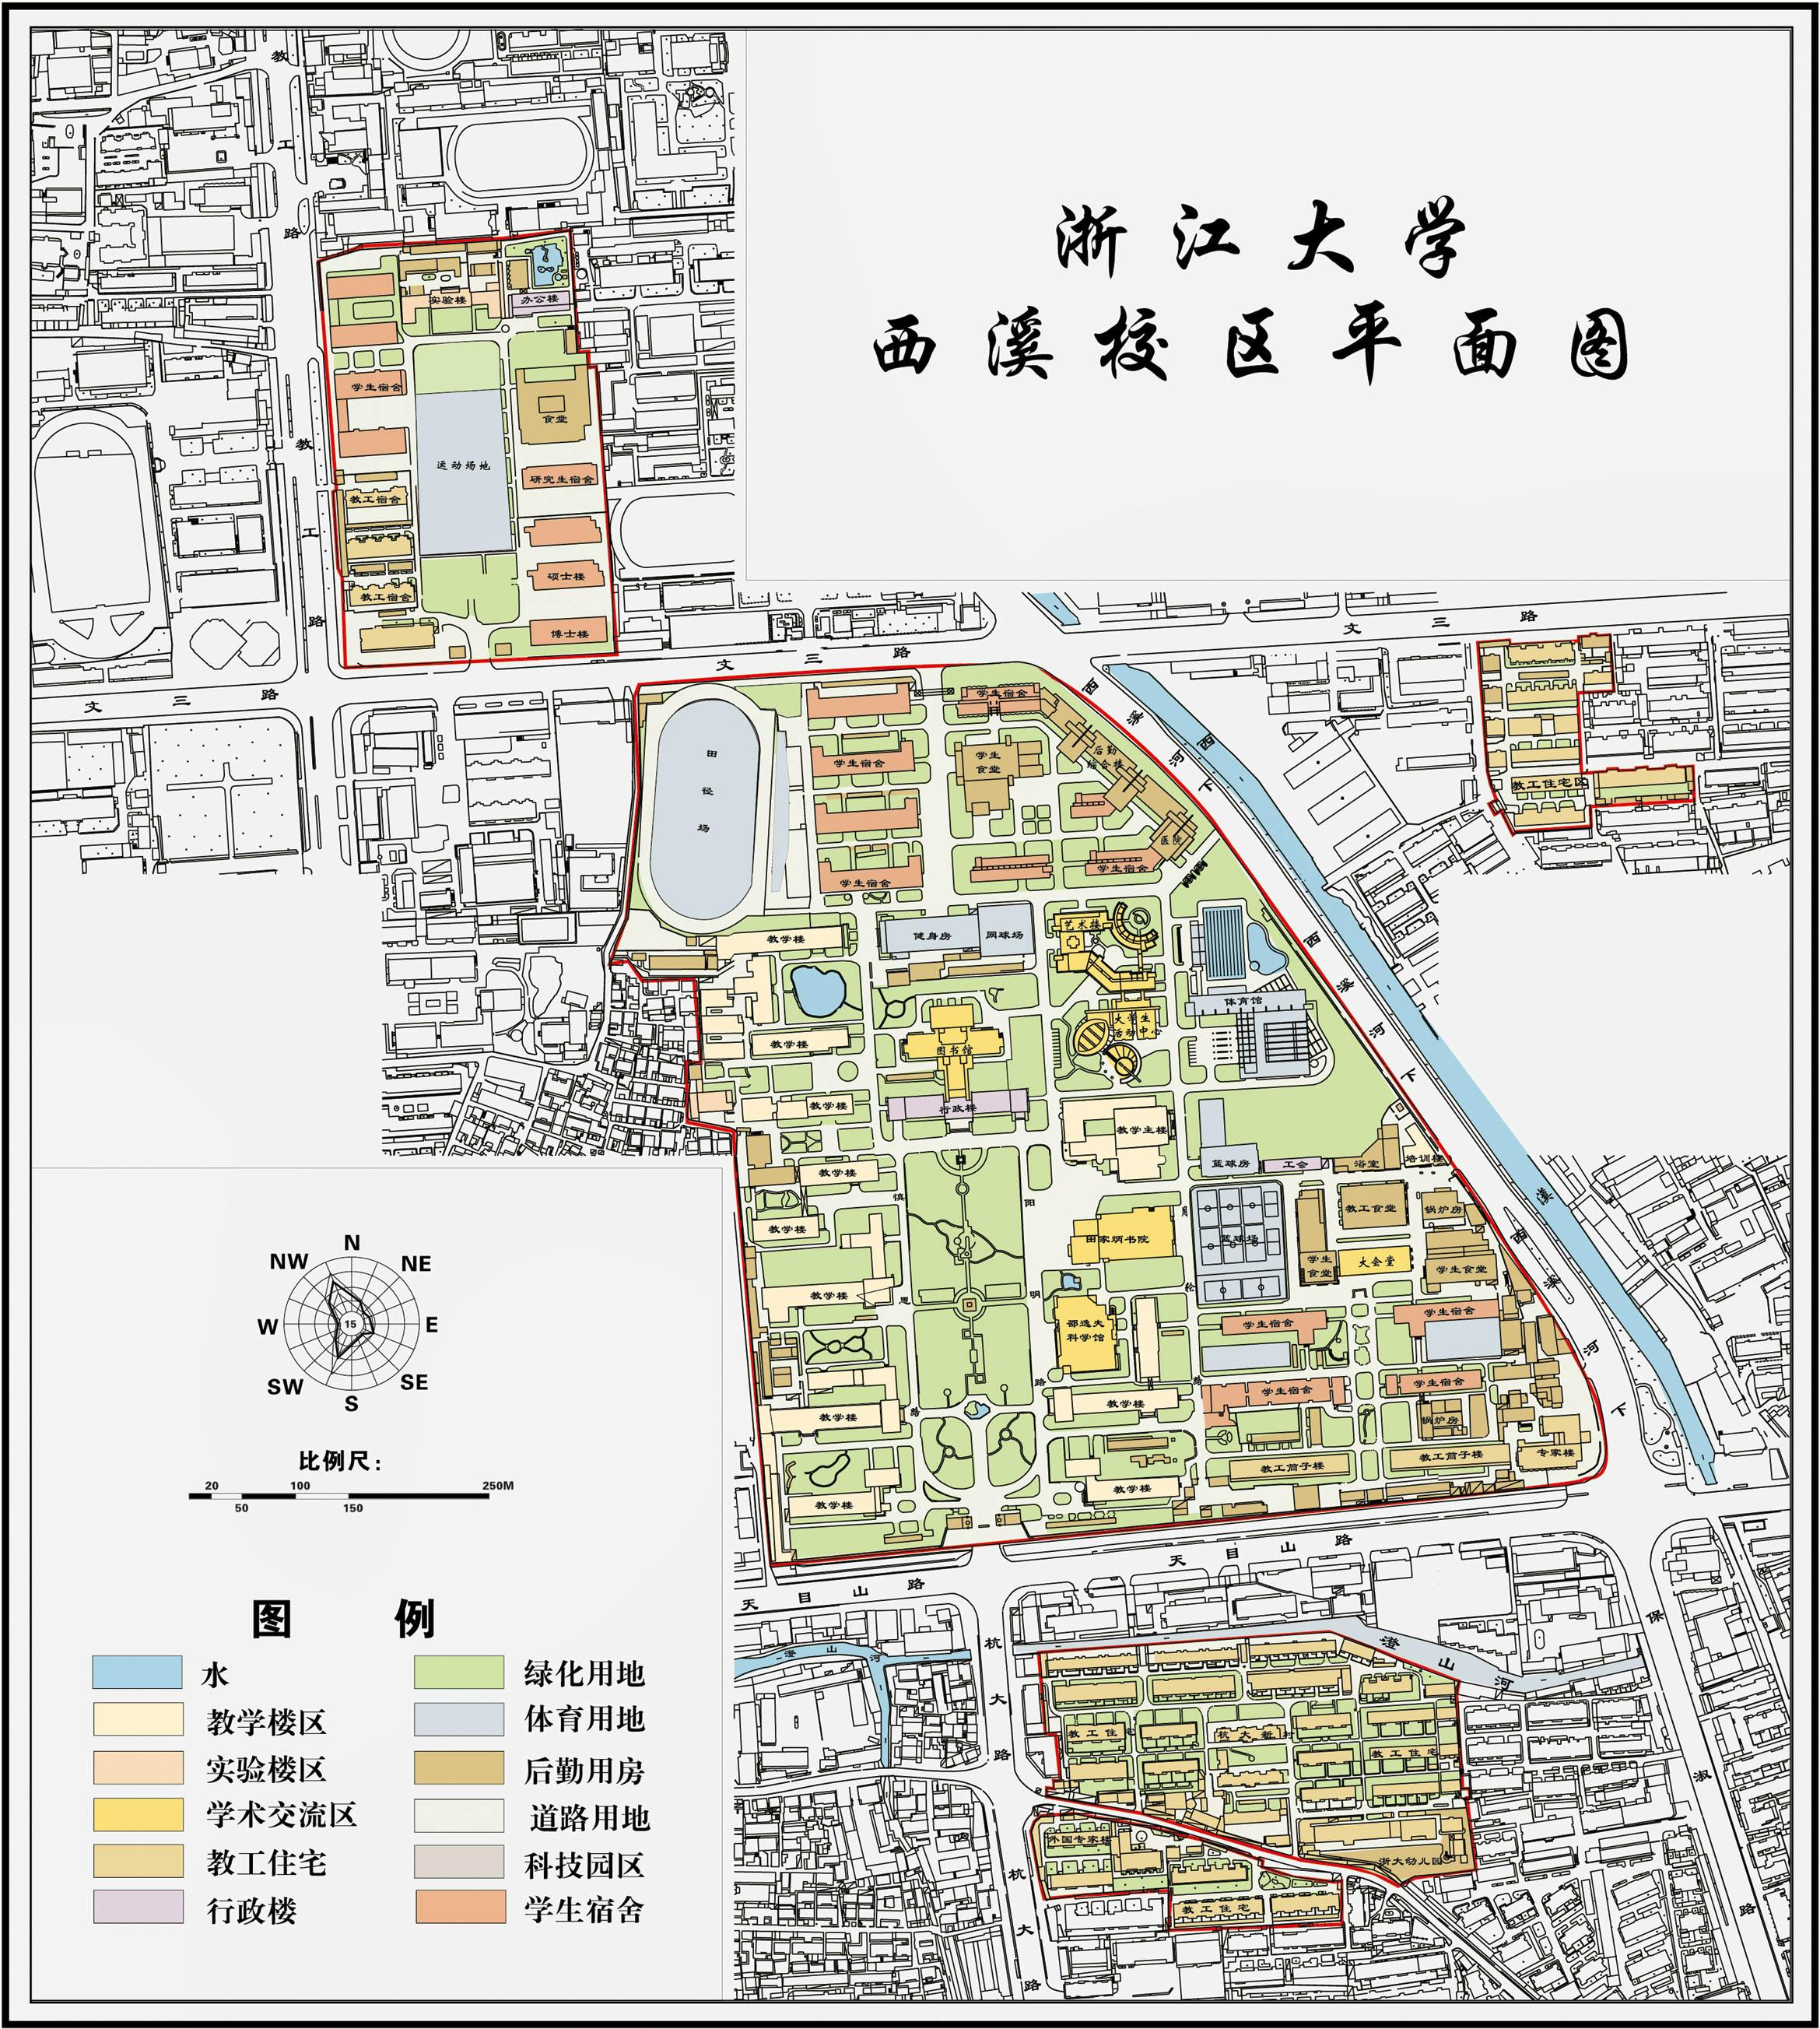 ZJU Xixi Campus Map